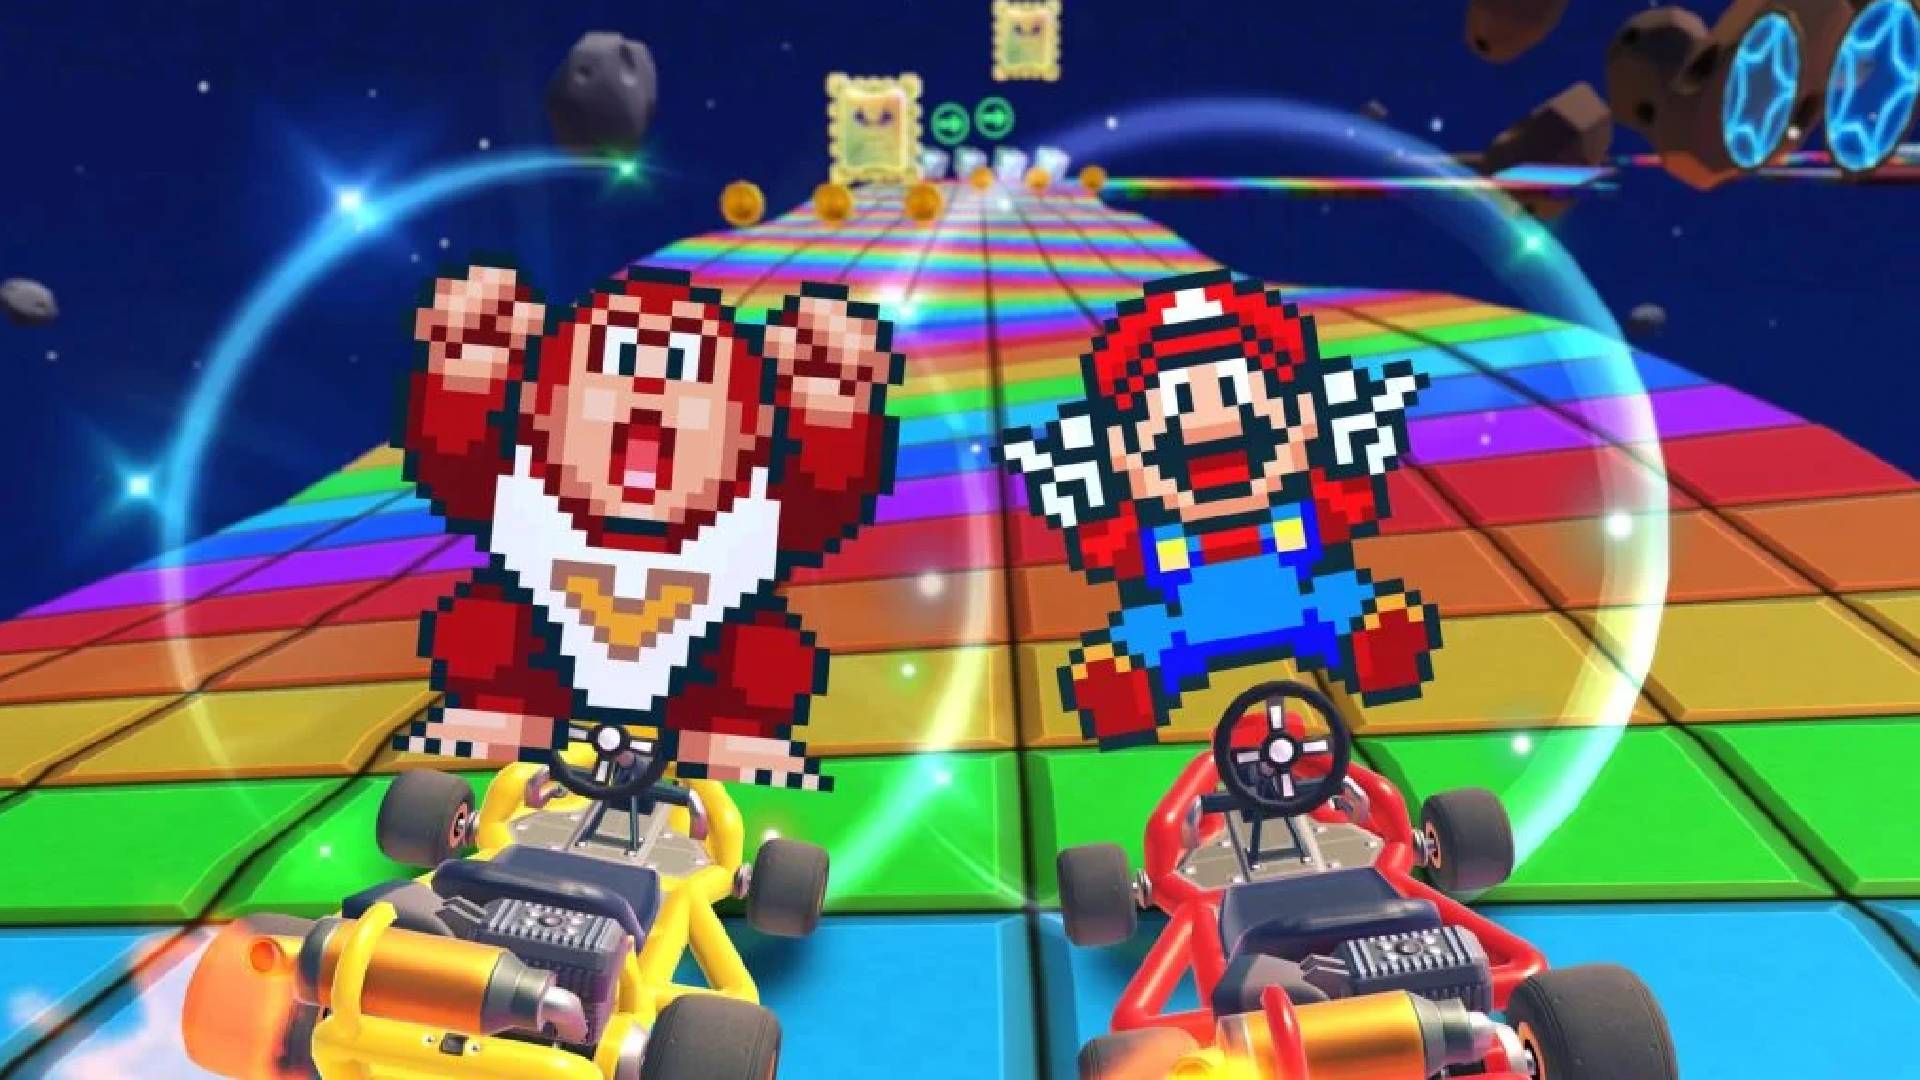 Nintendo Ending Mario Kart Tour Content 